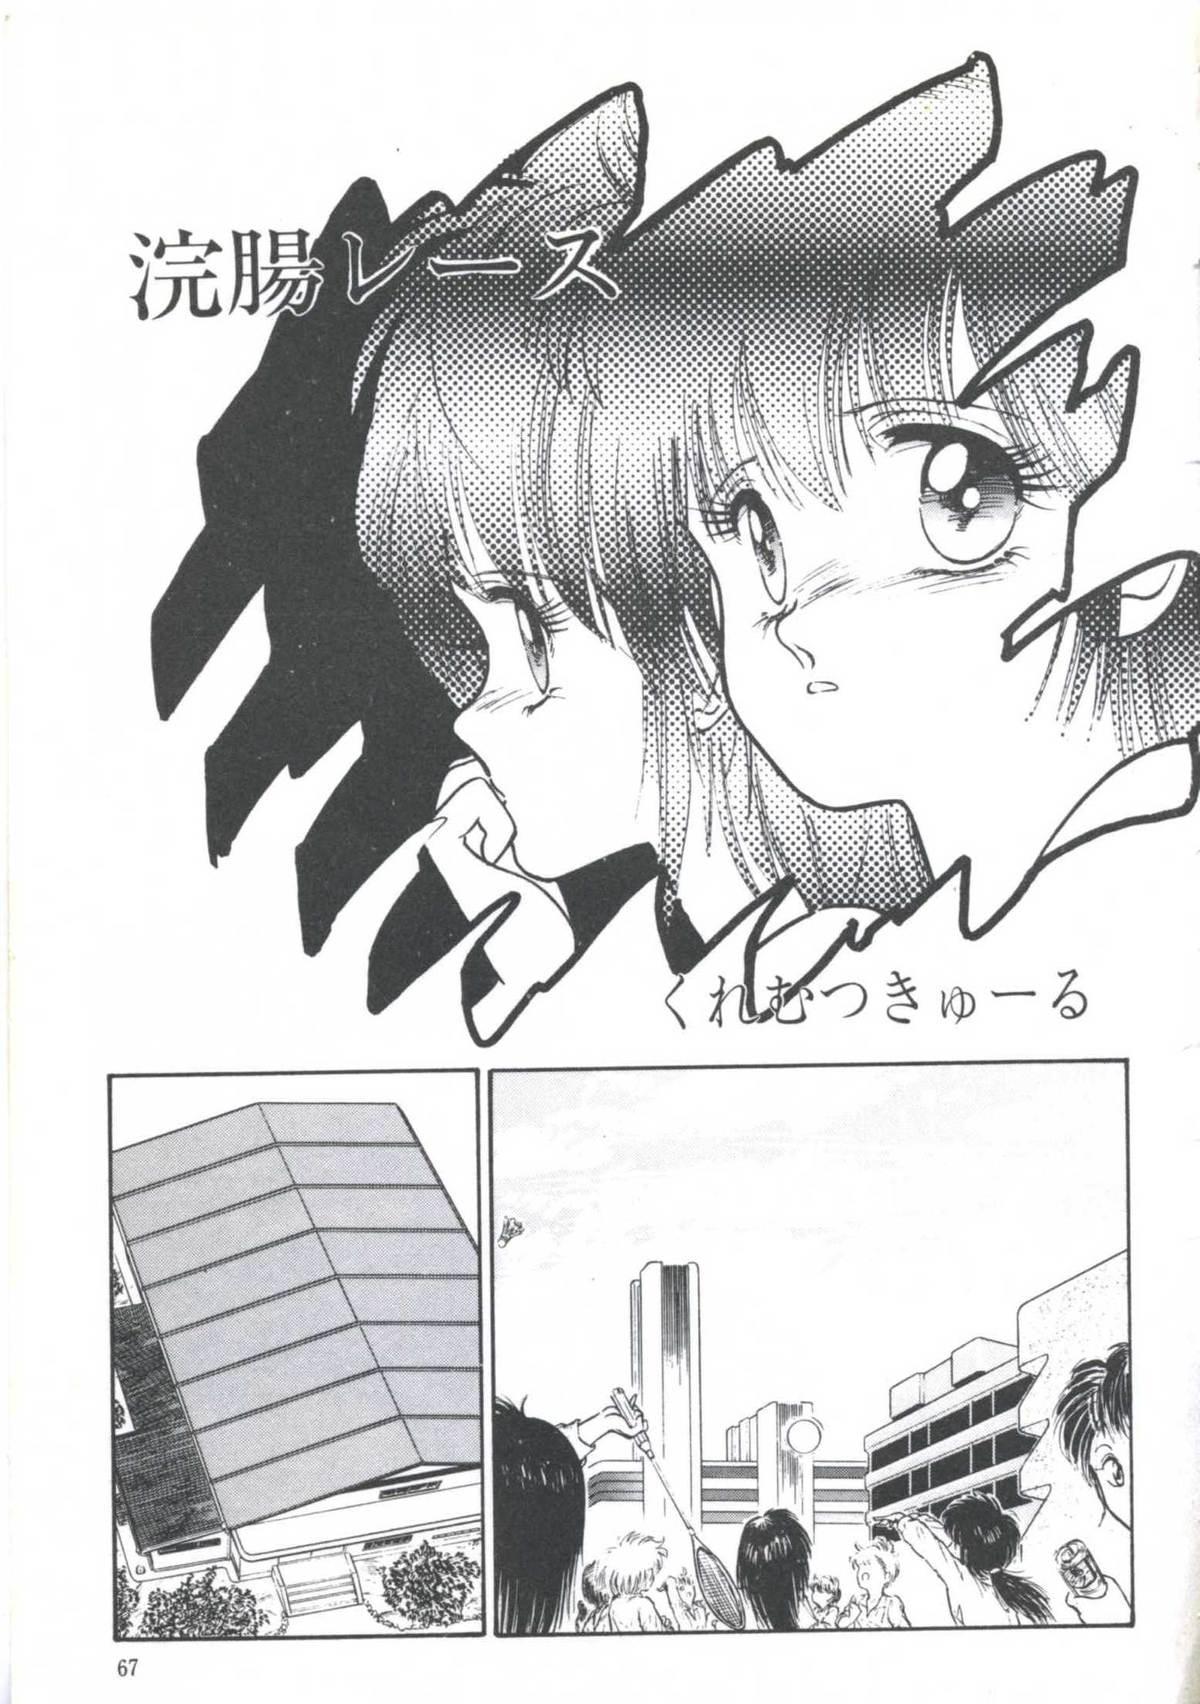 Yoiko no Shinsatsushitsu PART.4 68